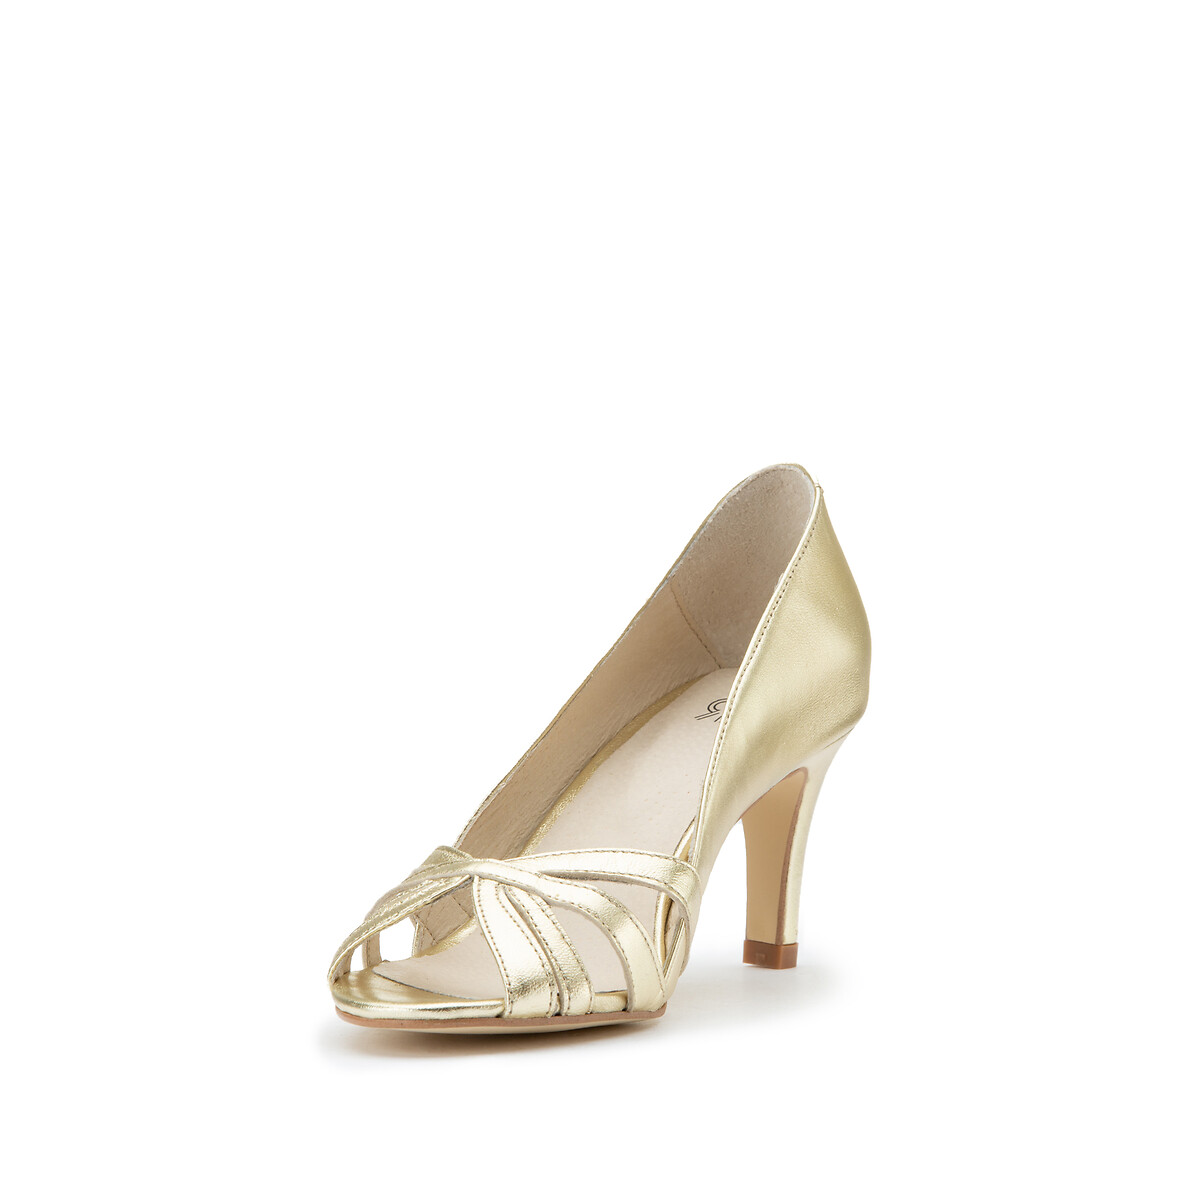 Туфли La Redoute Кожаные с металлическим блеском с открытым мыском на высоком каблуке 35 золотистый, размер 35 - фото 2